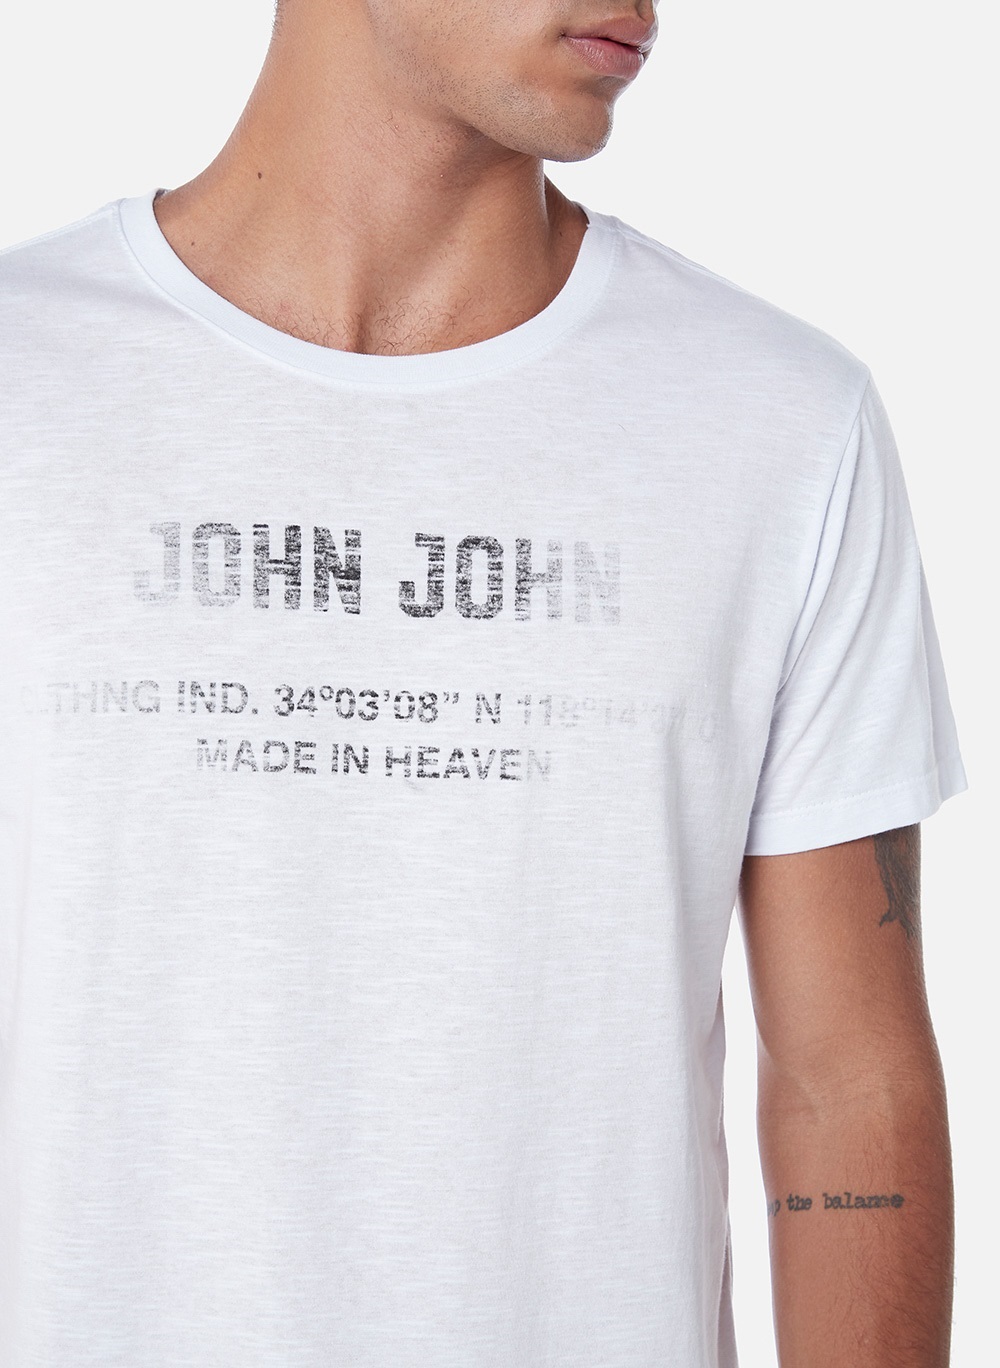 Camiseta Up Side John John Masculina 42.54.4944 - Camiseta Up Side John  John Masculina - JOHN JOHN MASC